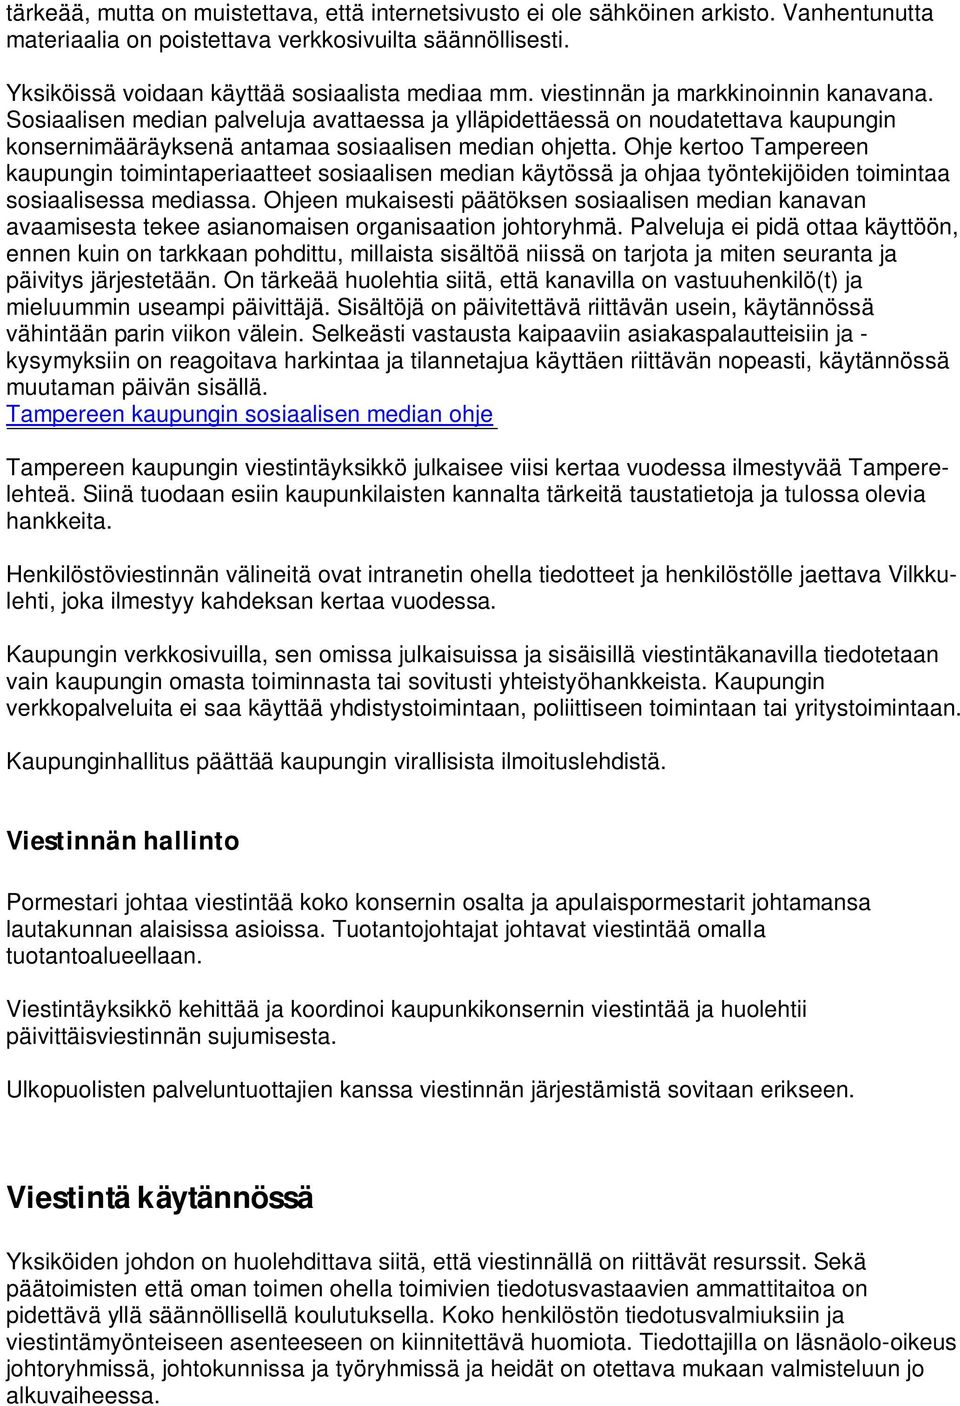 Ohje kertoo Tampereen kaupungin toimintaperiaatteet sosiaalisen median käytössä ja ohjaa työntekijöiden toimintaa sosiaalisessa mediassa.